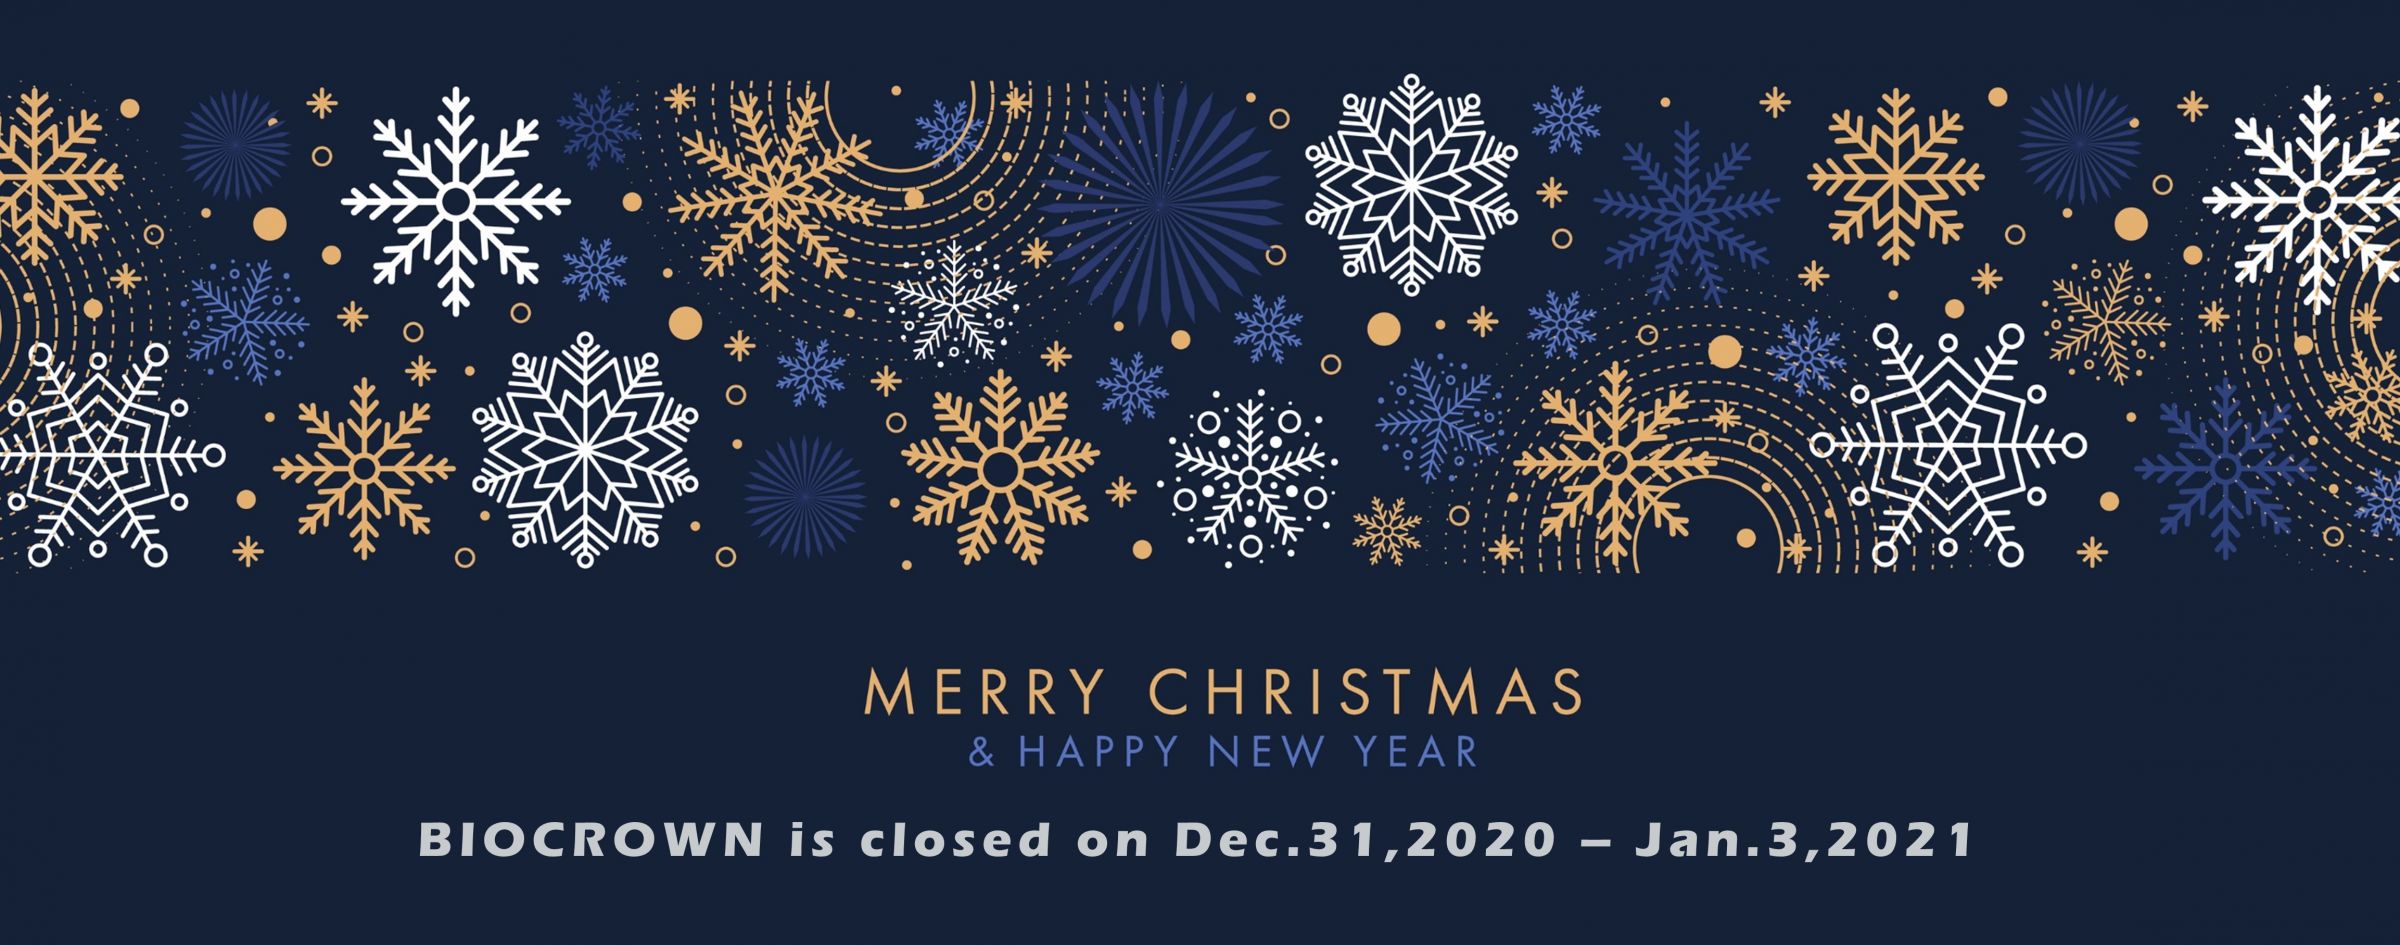 إشعار عطلة: BIOCROWN الإغلاق في 31 ديسمبر 2020 - 3 يناير 2021